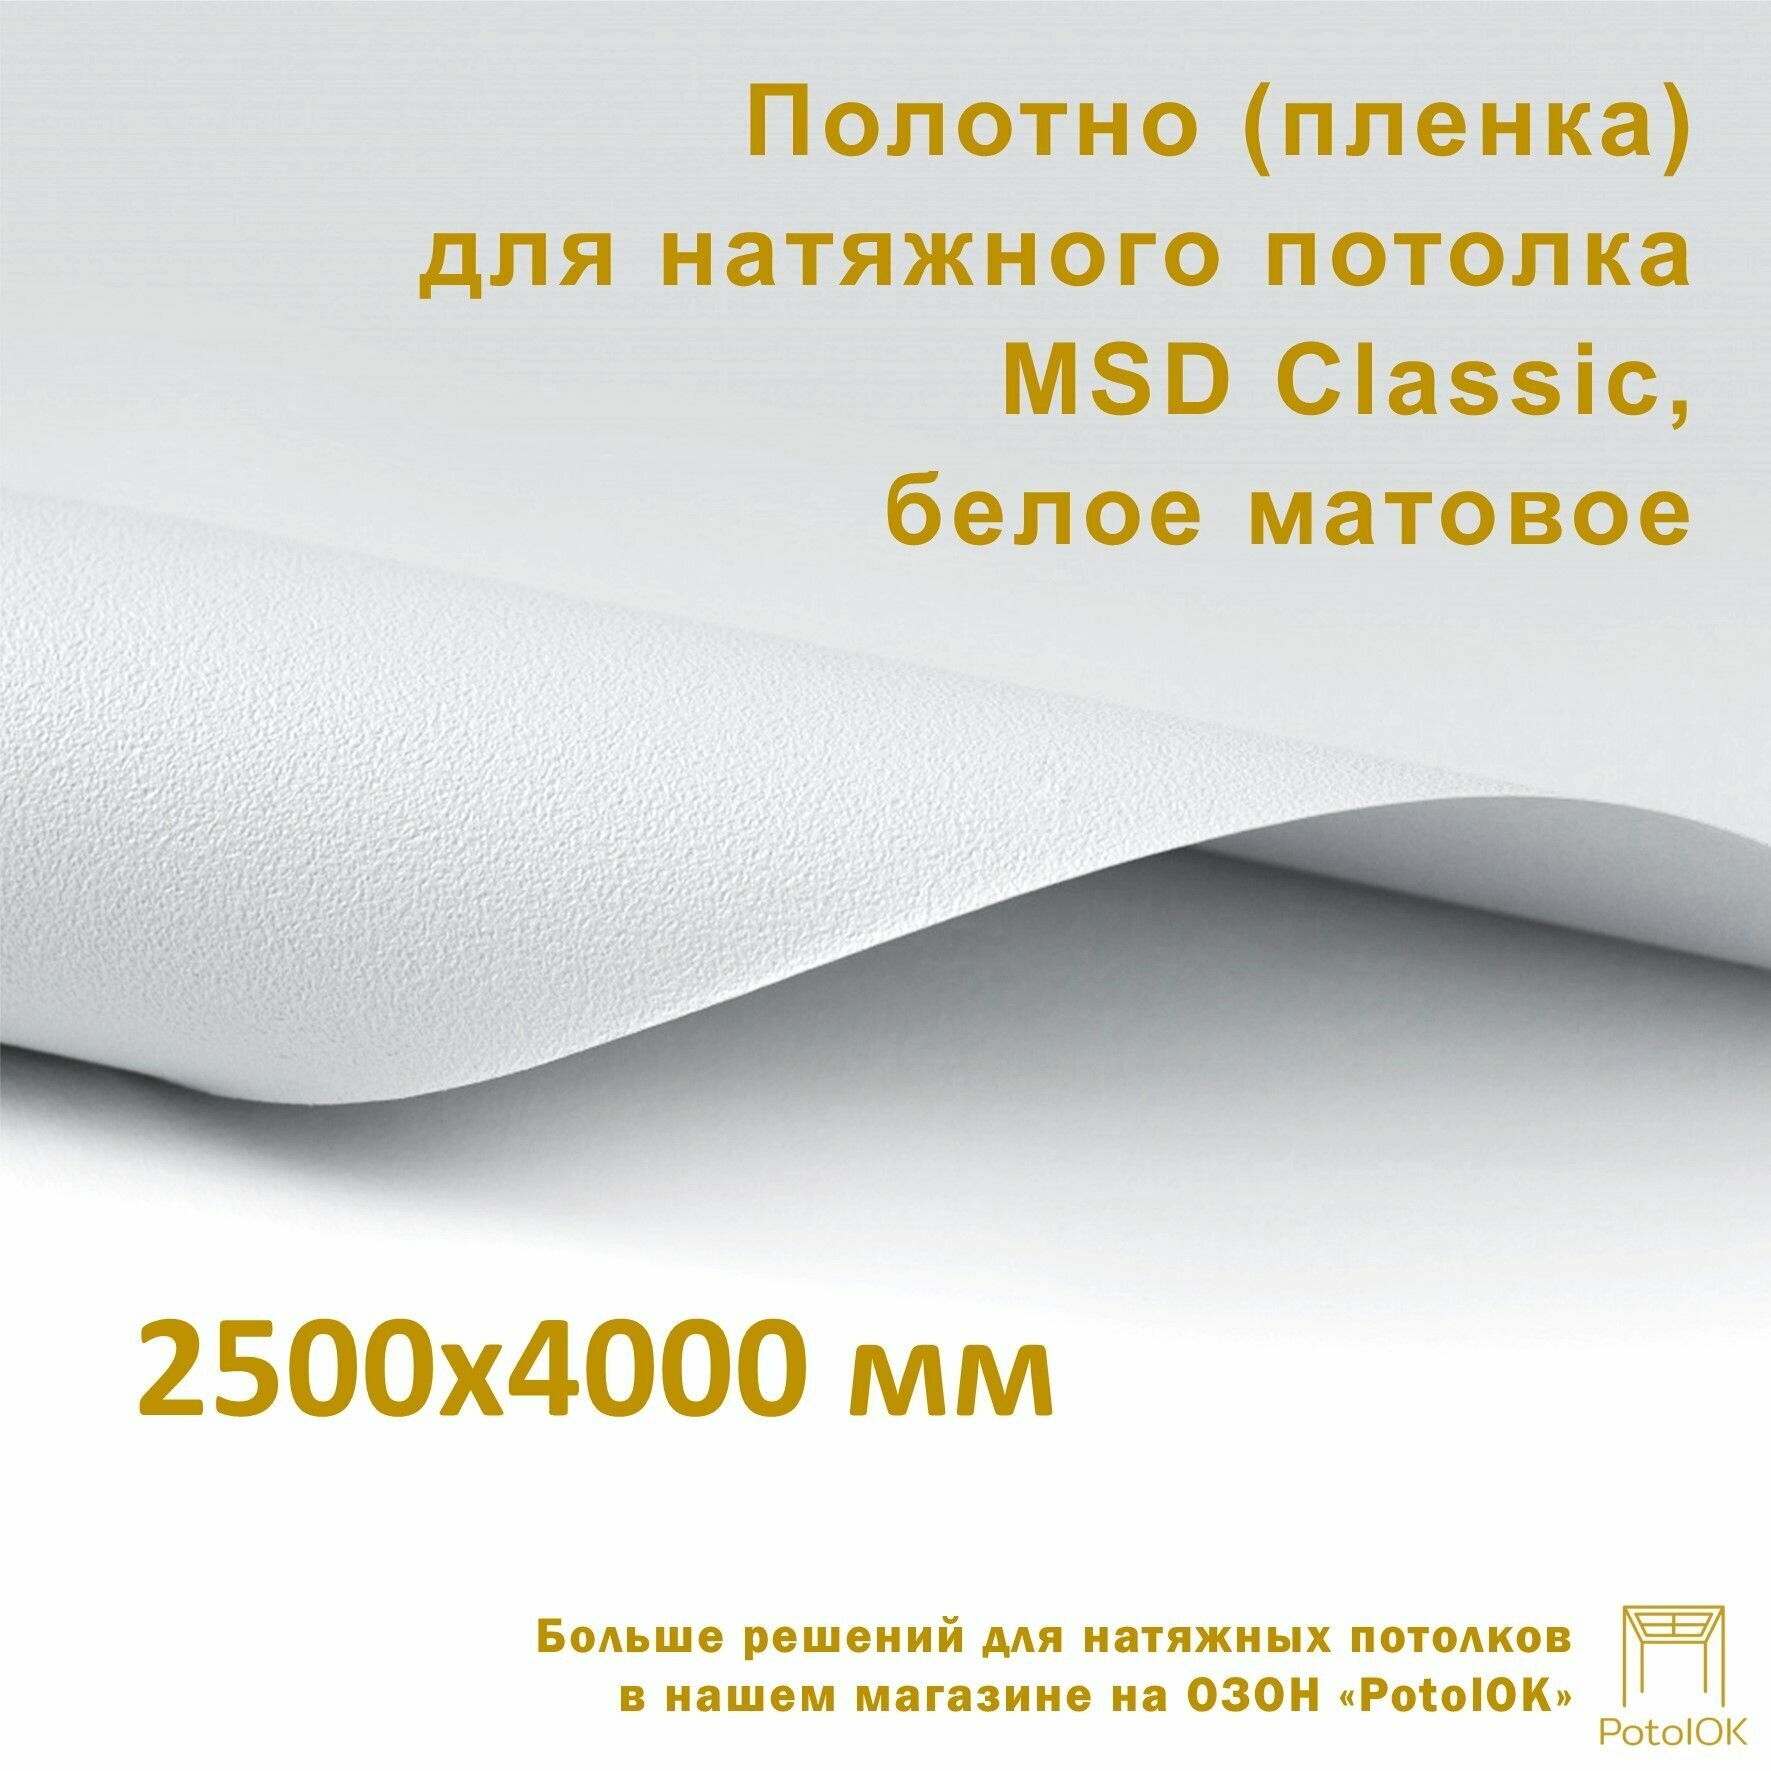 Полотно (пленка) для натяжного потолка MSD CLASSIC, белое матовое, 2500x4000 мм